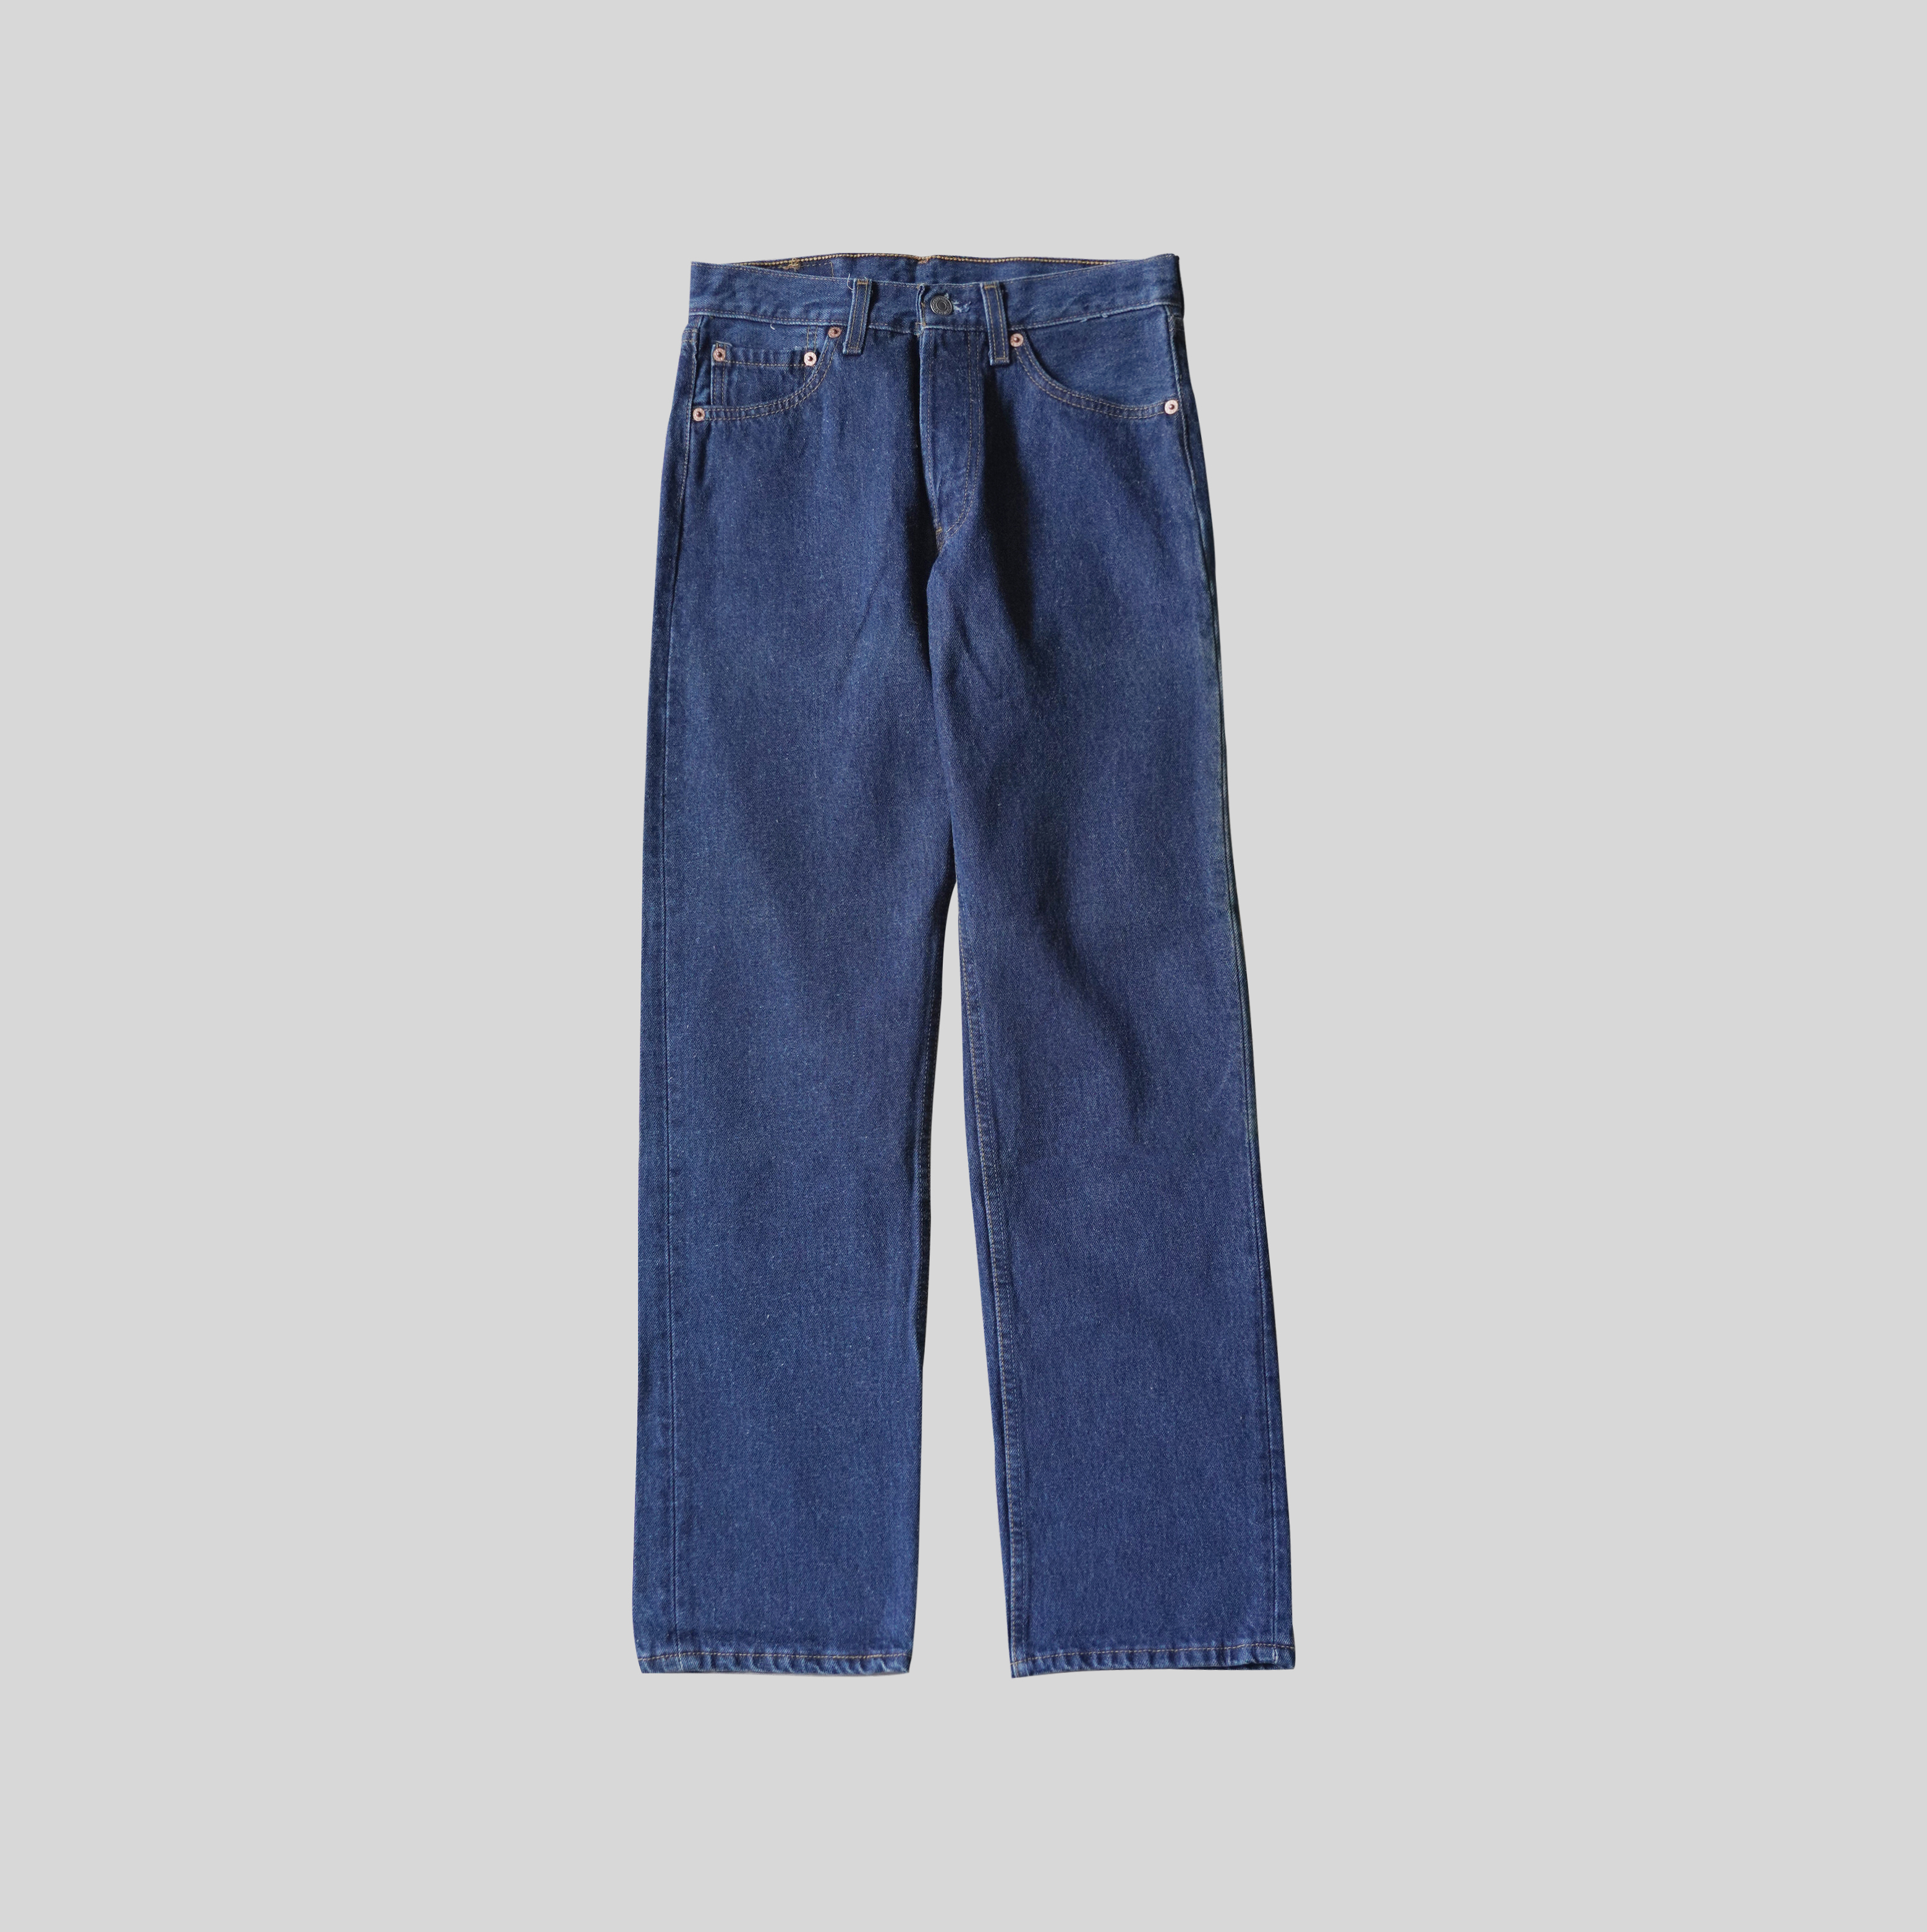 Vintage Levi's Pants Fits Youth 27 x 30 Blue Denim Jeans Student Fit 80s  Talon Zip